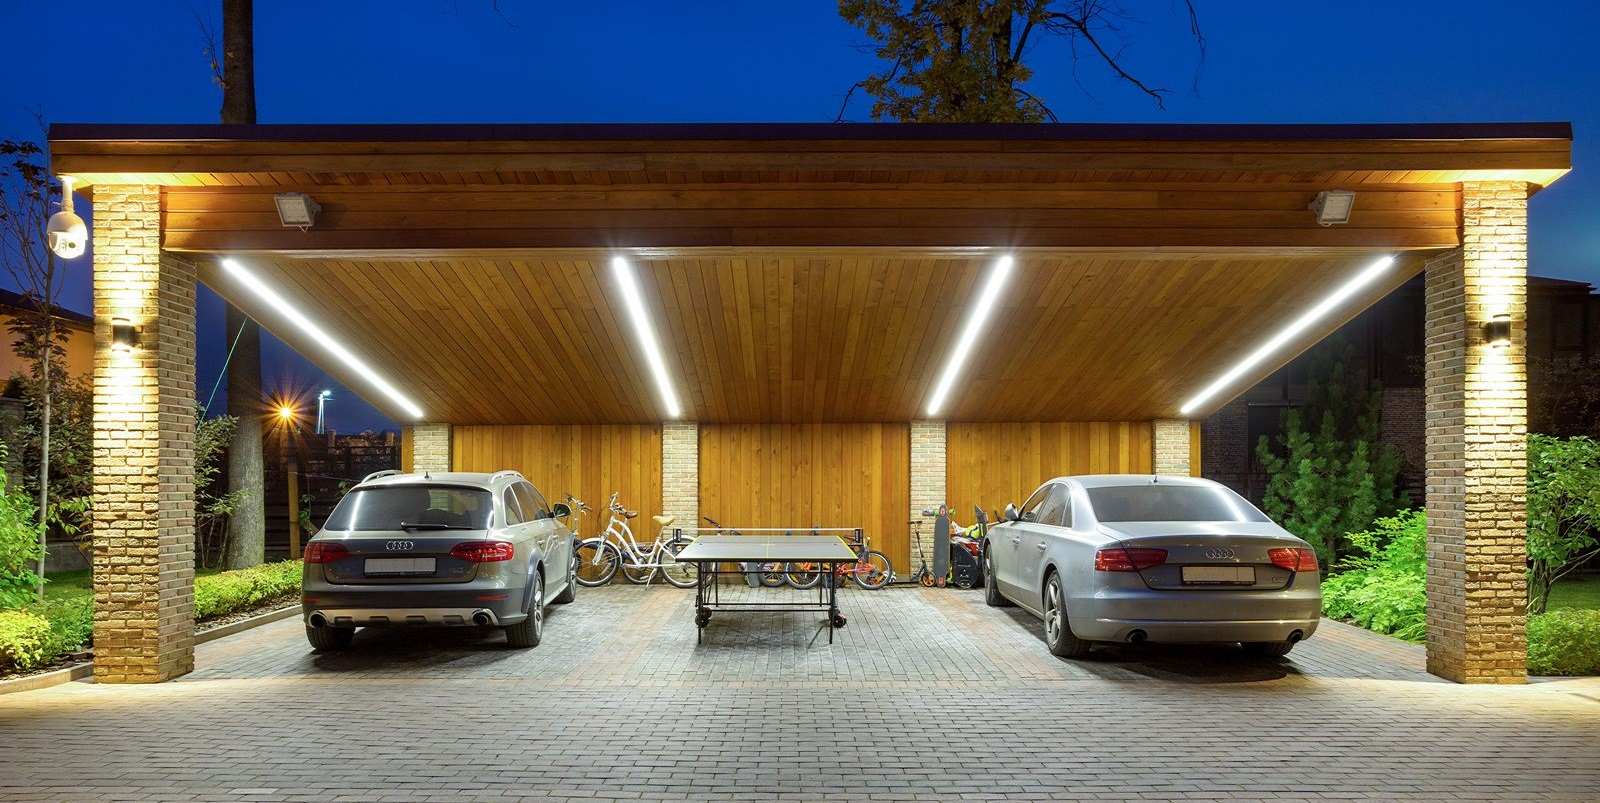 Что лучше для автомобиля гараж или навес? где ставить авто на даче